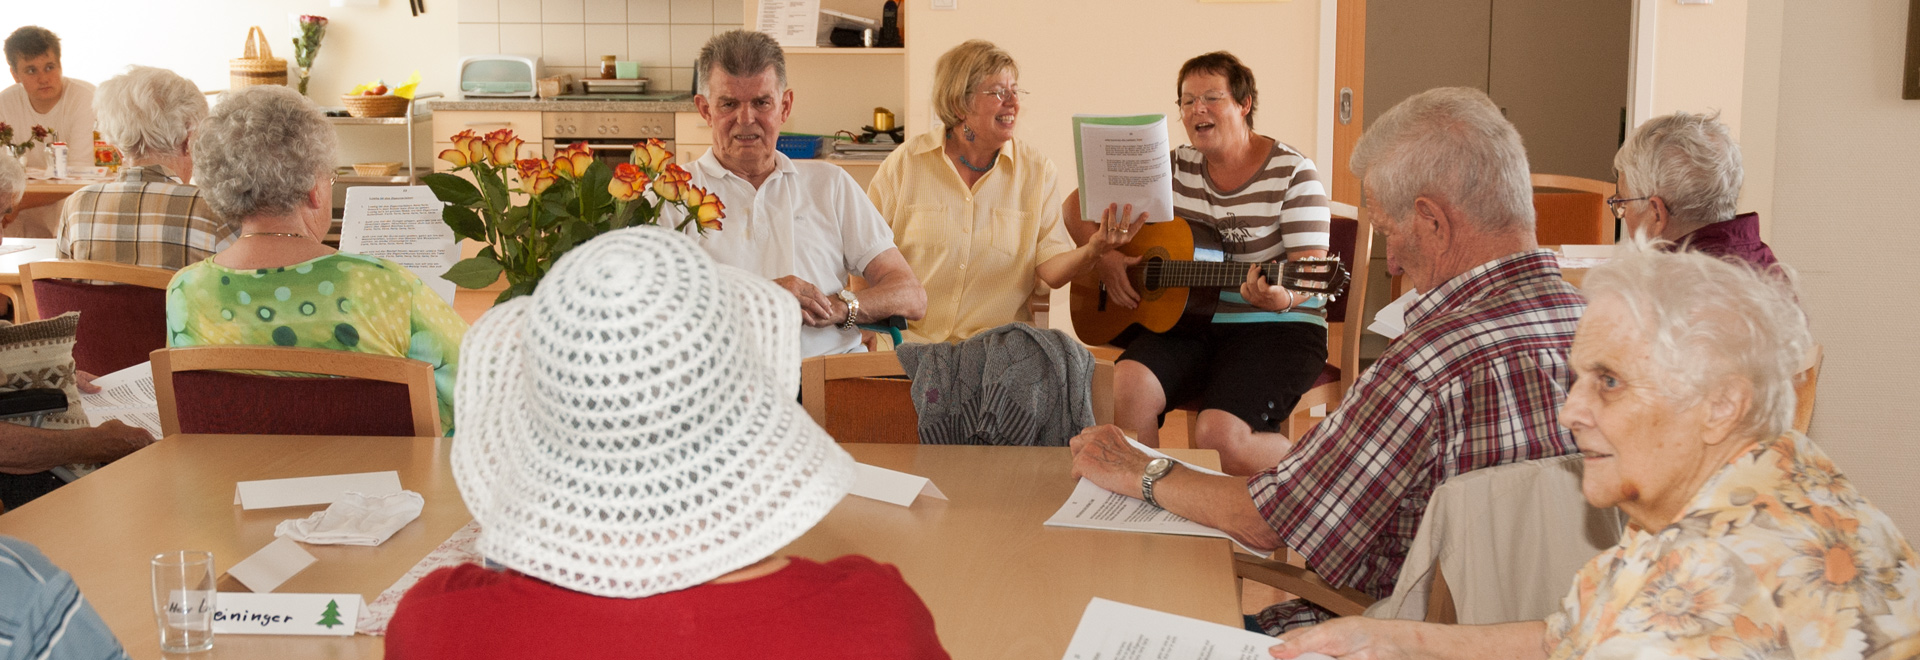 Senioren sitzen an einem Tisch und singen